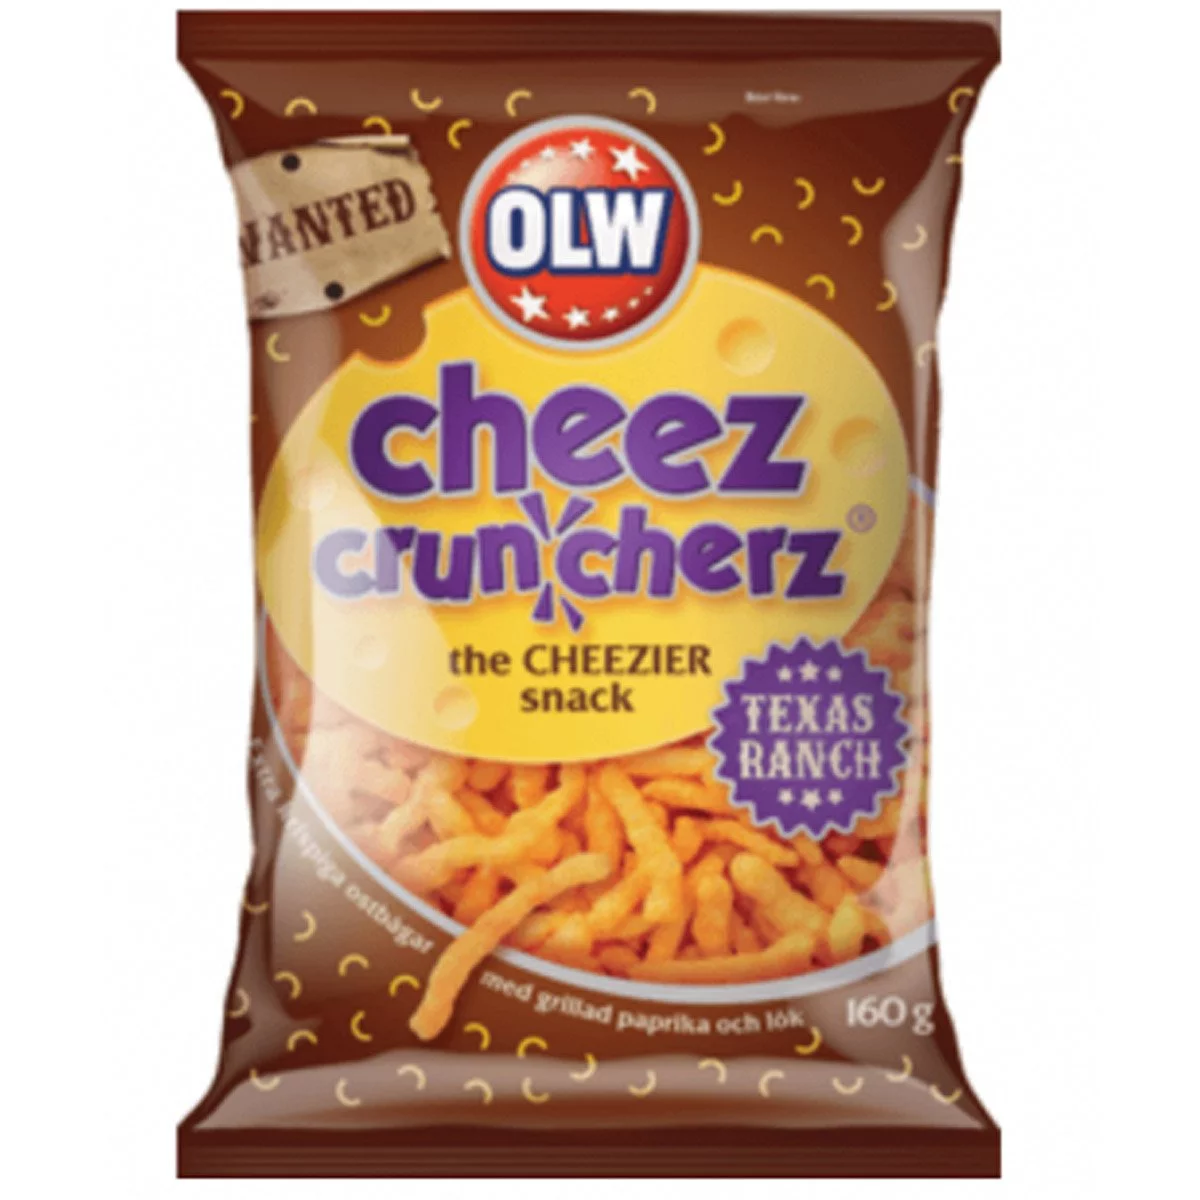 OLW Cheez Cruncherz (160g) 1